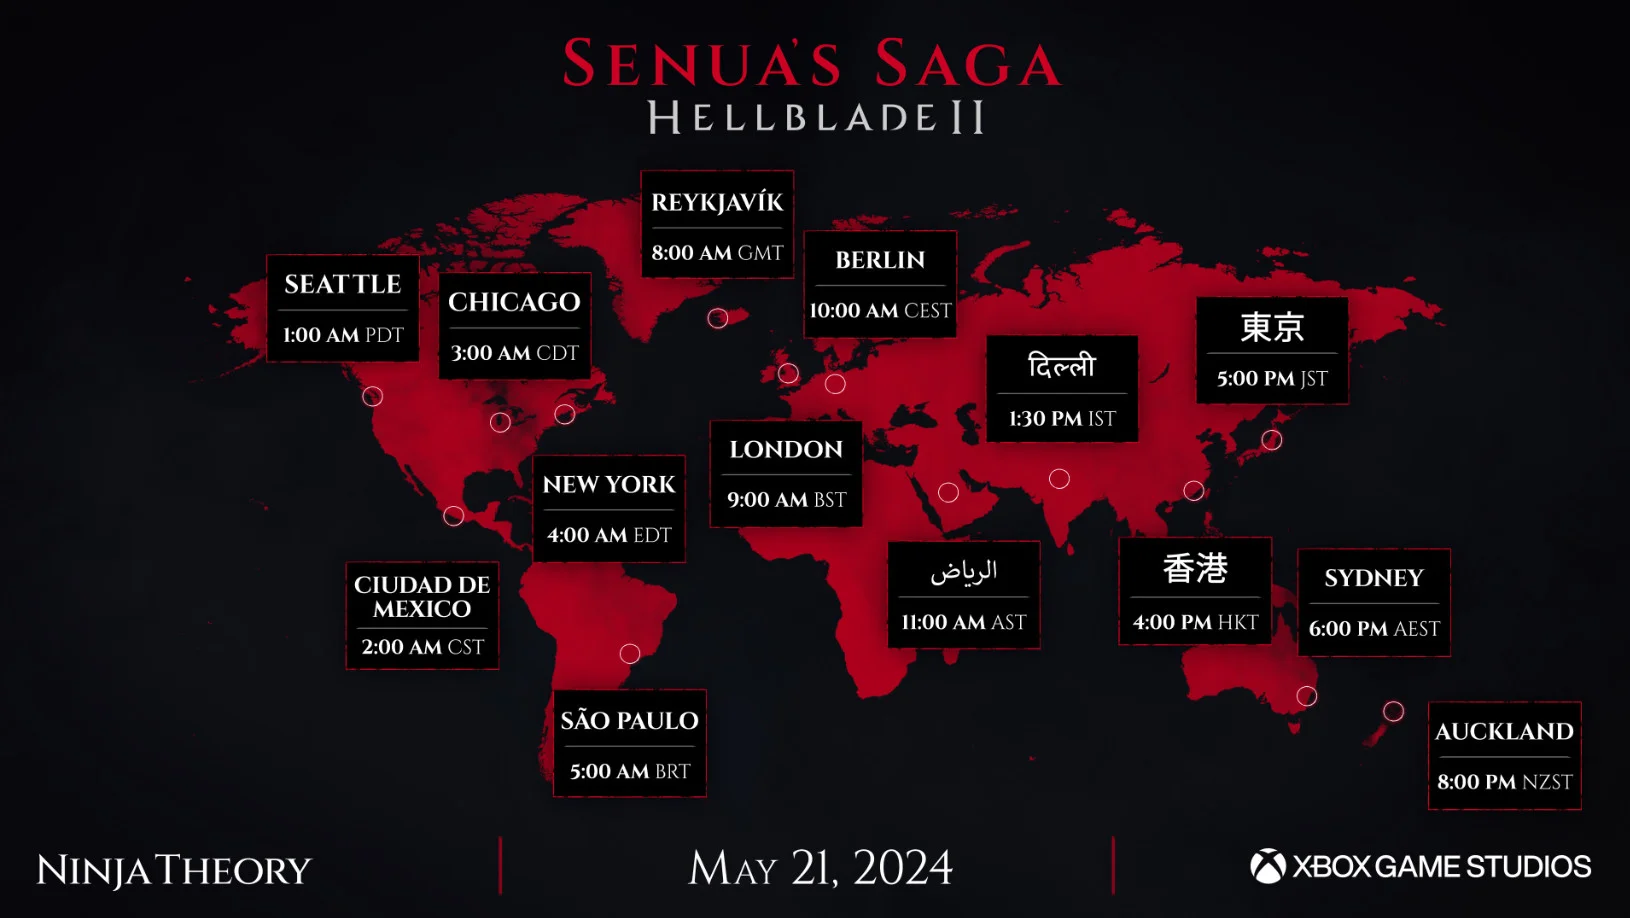 Senuas Saga Hellblade 2 получила точное время релиза и подробности фоторежима - фото 1